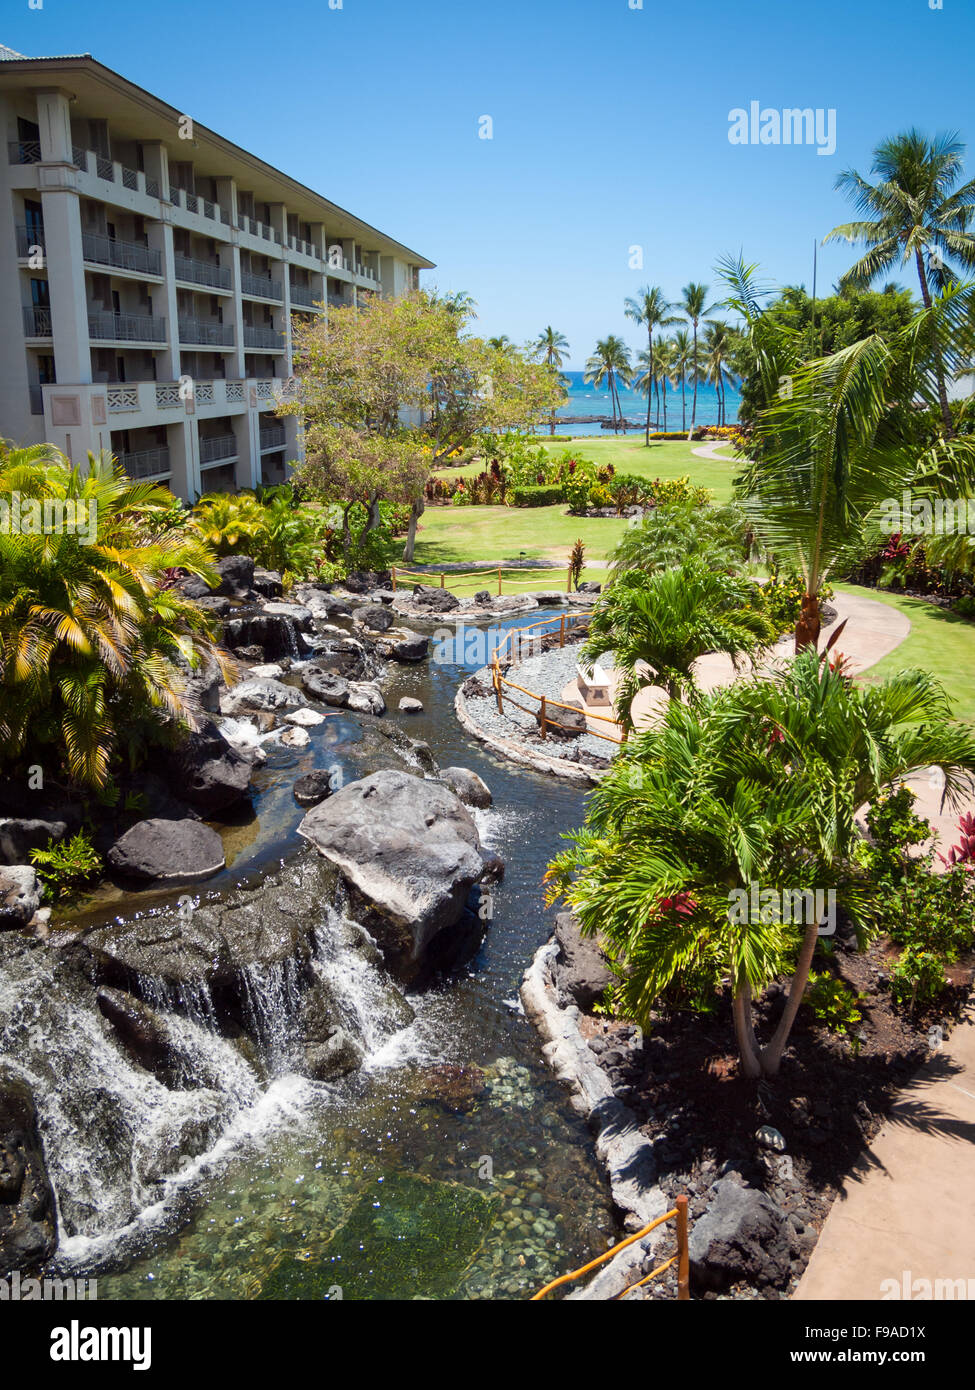 Die Kona (Süden) Turm und Gärten des Fairmont Orchid, ein Luxus-Hotel und Resort an der Kohala Coast, Hawai ' i (Hawaii). Stockfoto